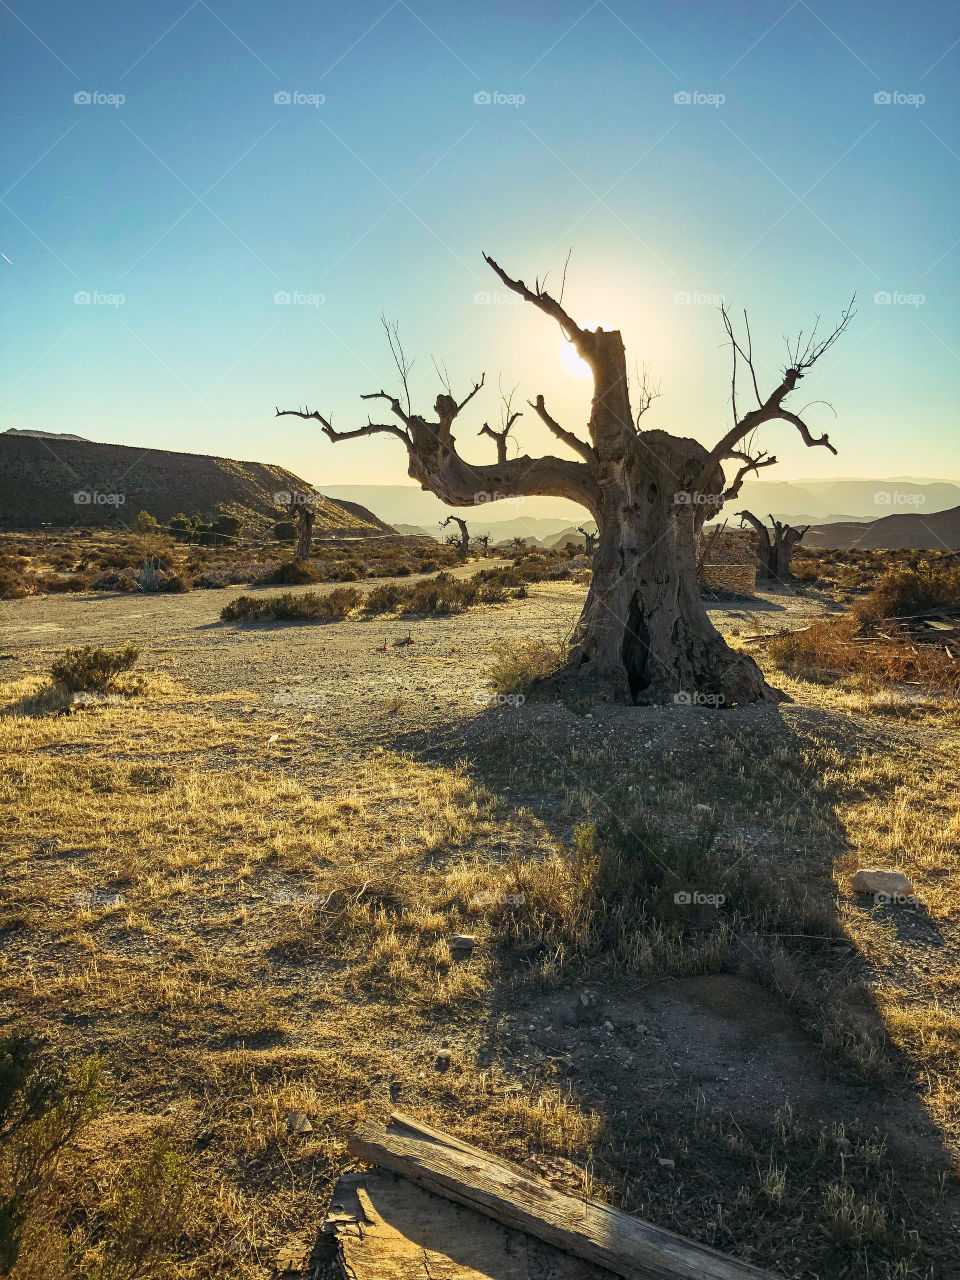 Famos tree in the Tabernas desert 